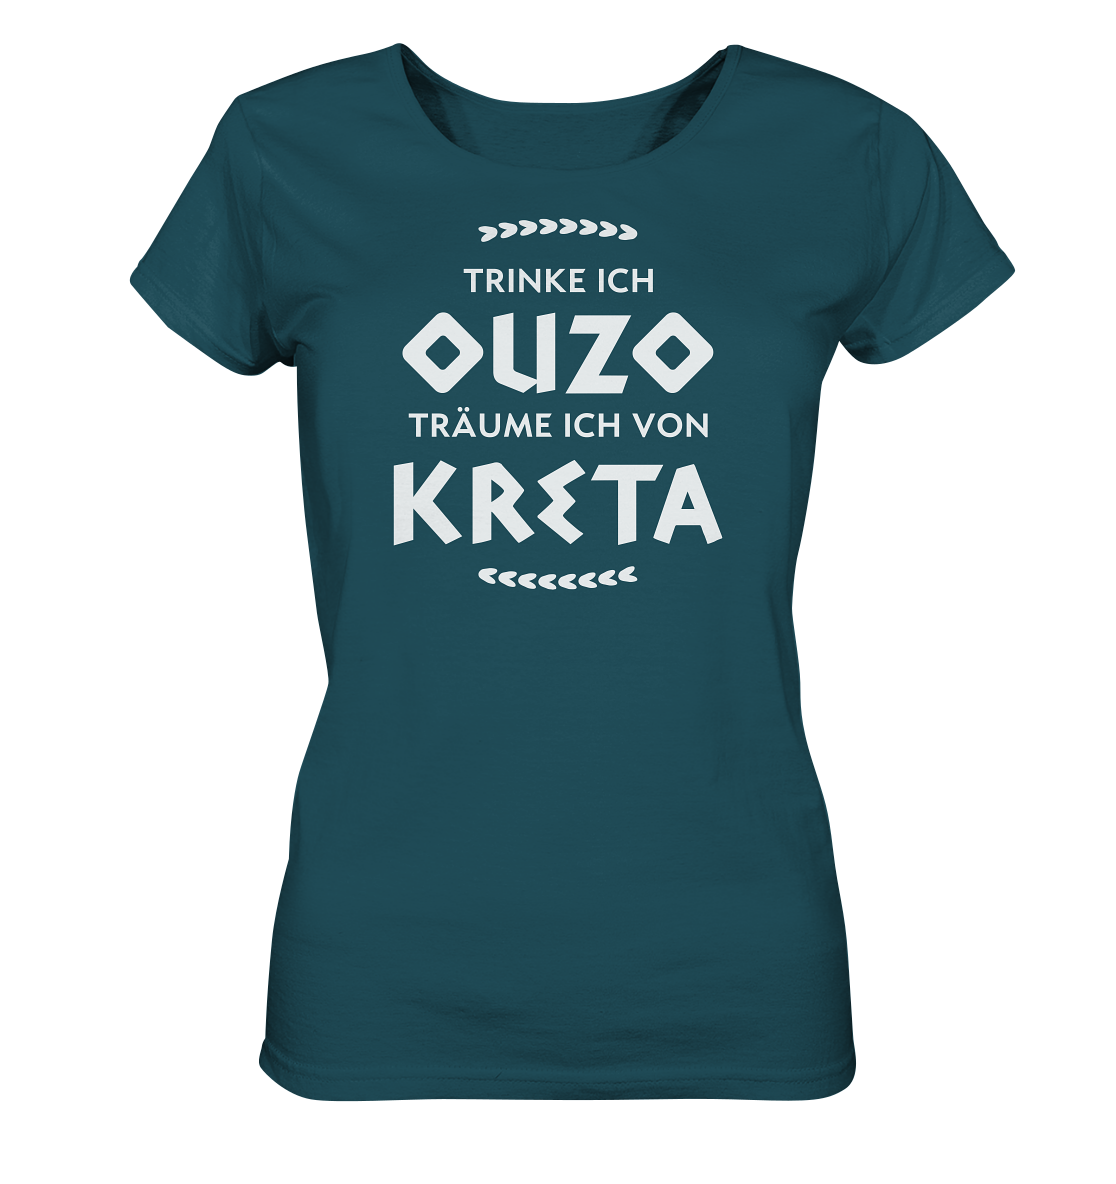 Trinke ich Ouzo träume ich von Kreta - Ladies Organic Shirt